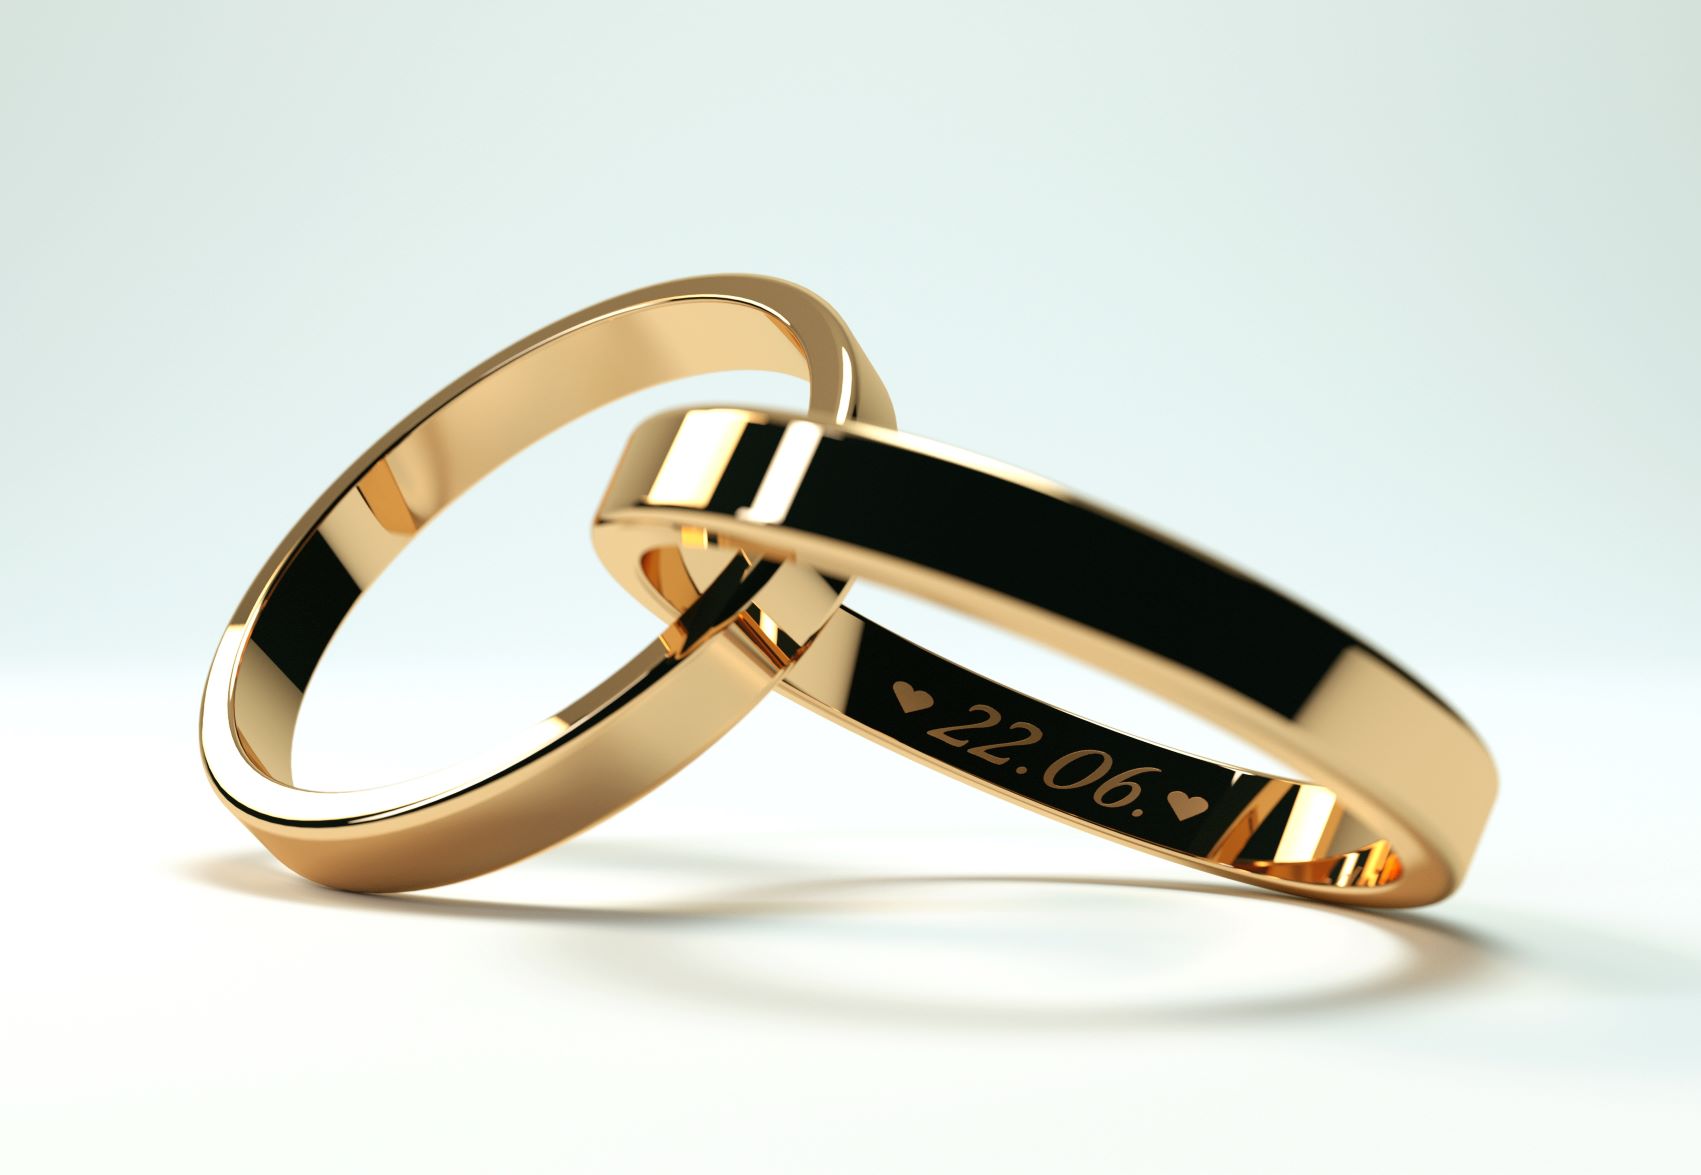 Ring Engraving Ideas | Wedding Band & Engagement Ring Engravings